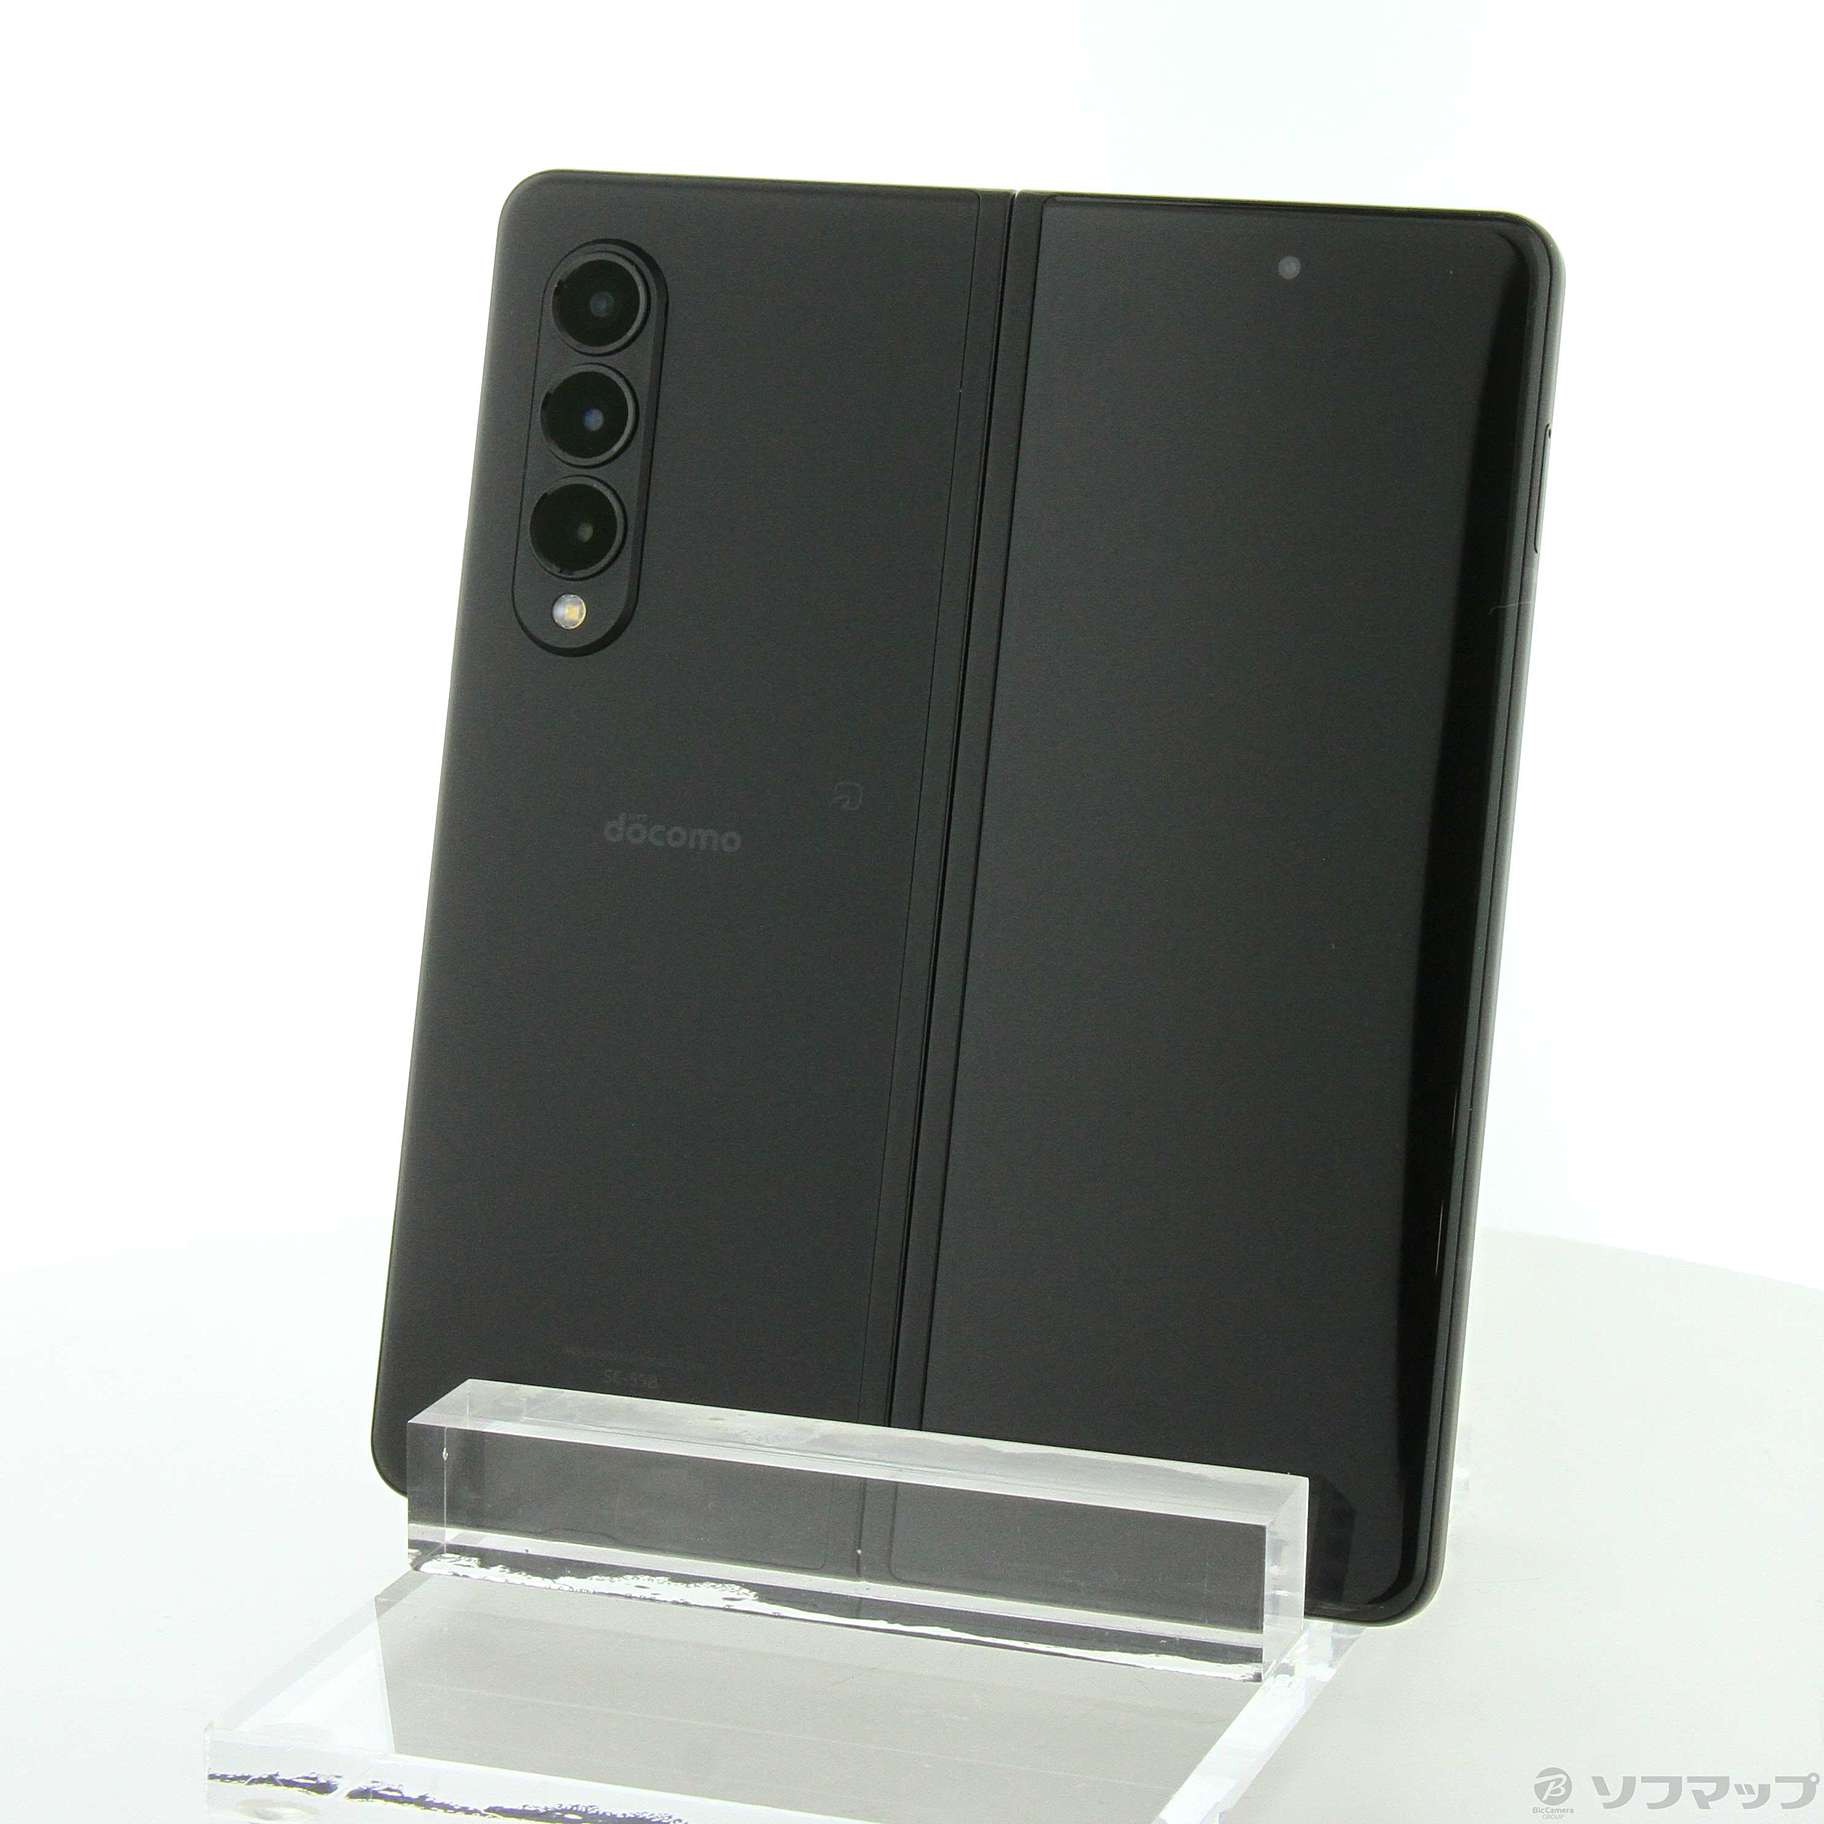 Galaxy Z Fold3 5G SC-55B 256GB ブラック ドコモ